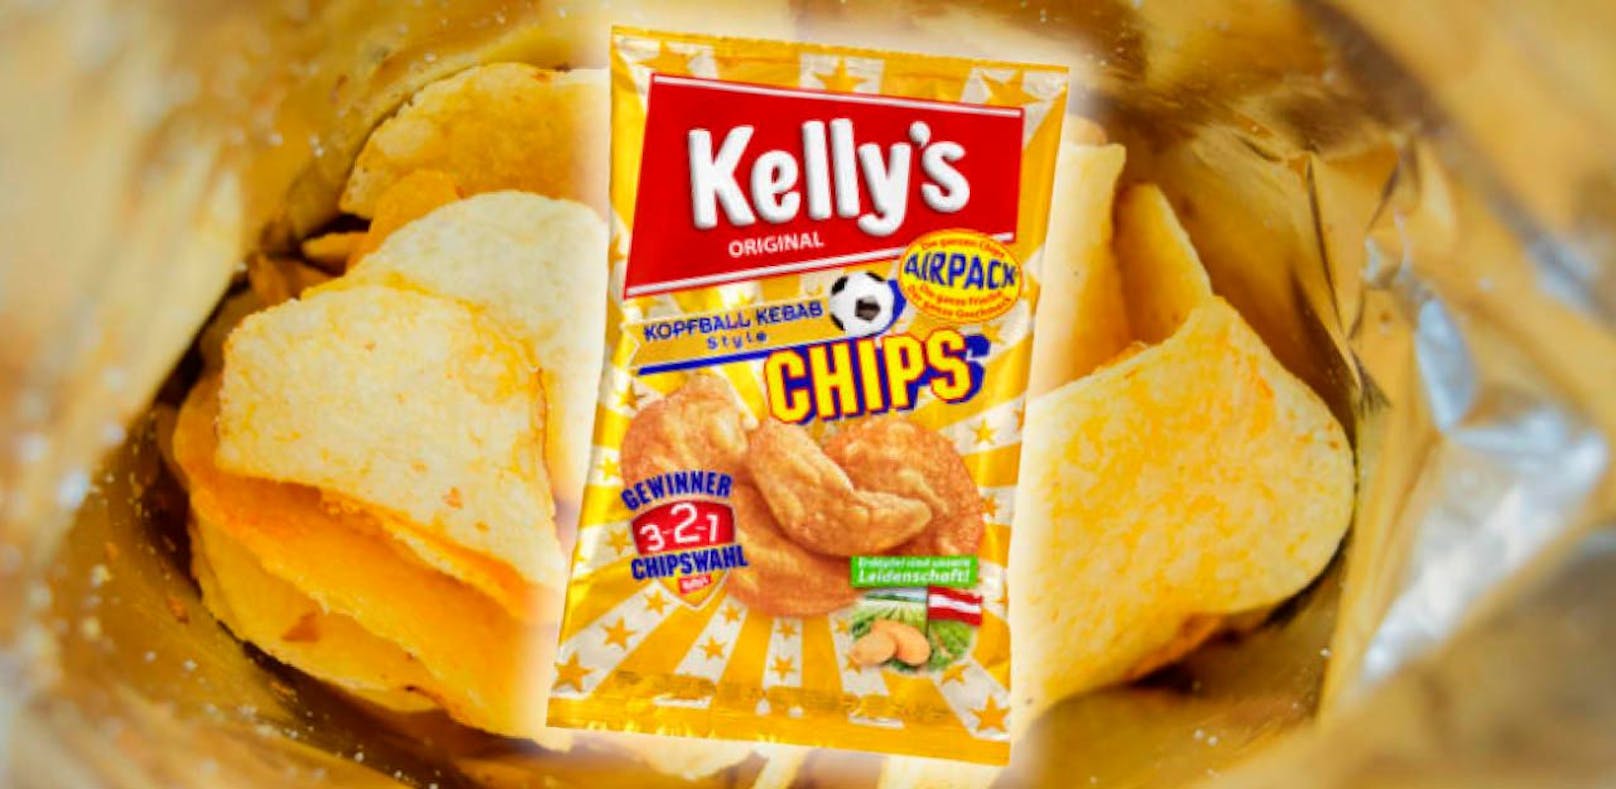 Chips mit Kebab-Geschmack neu im Kelly-Sortiment